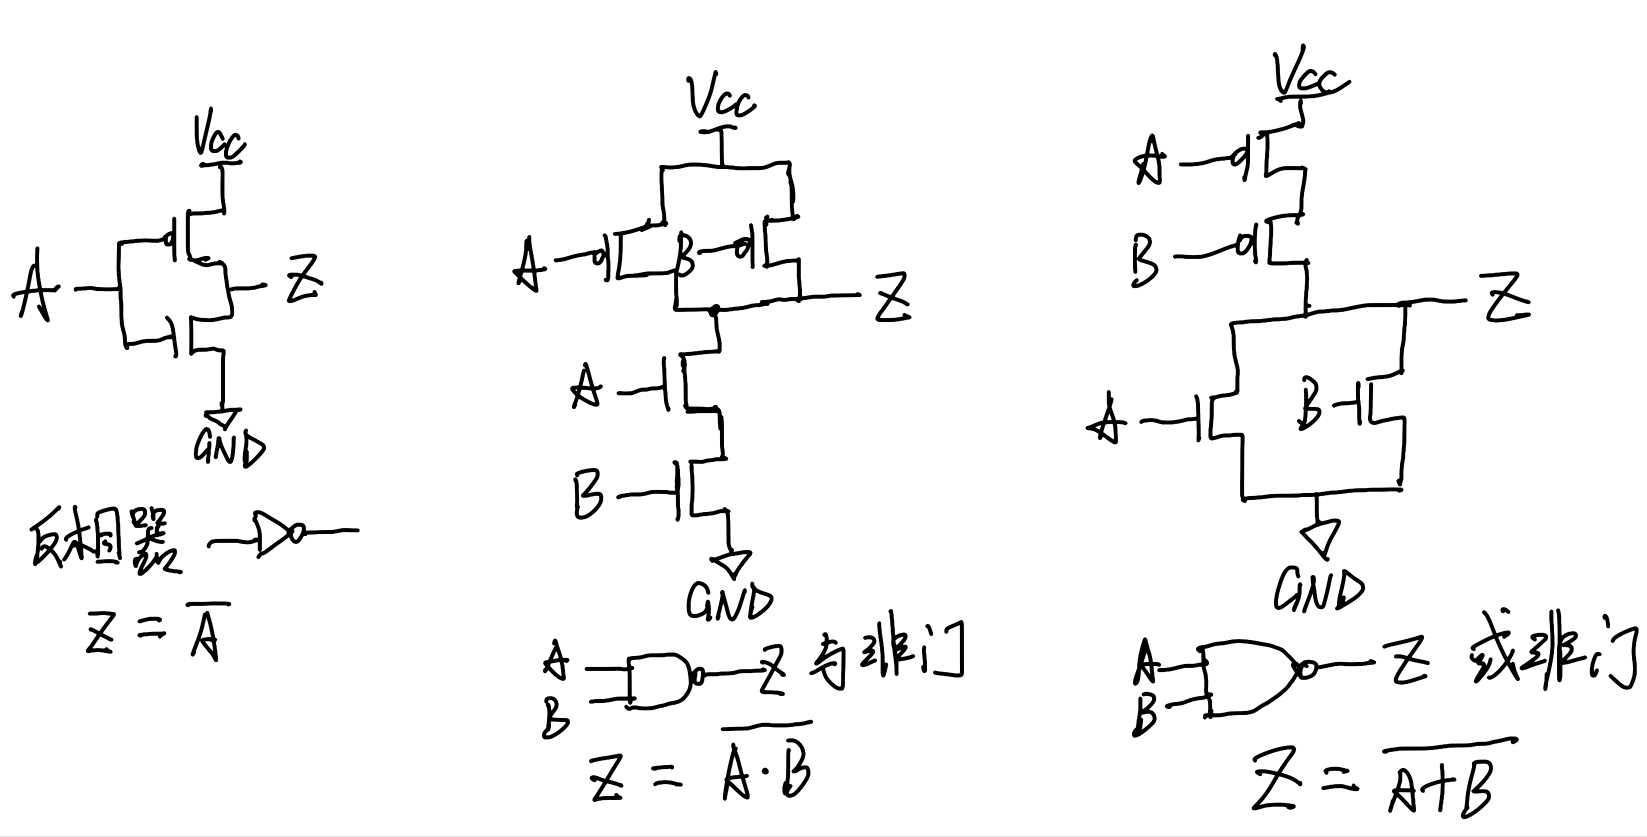 cmos集成电路的基本单元（反相器、与非门、或非门）